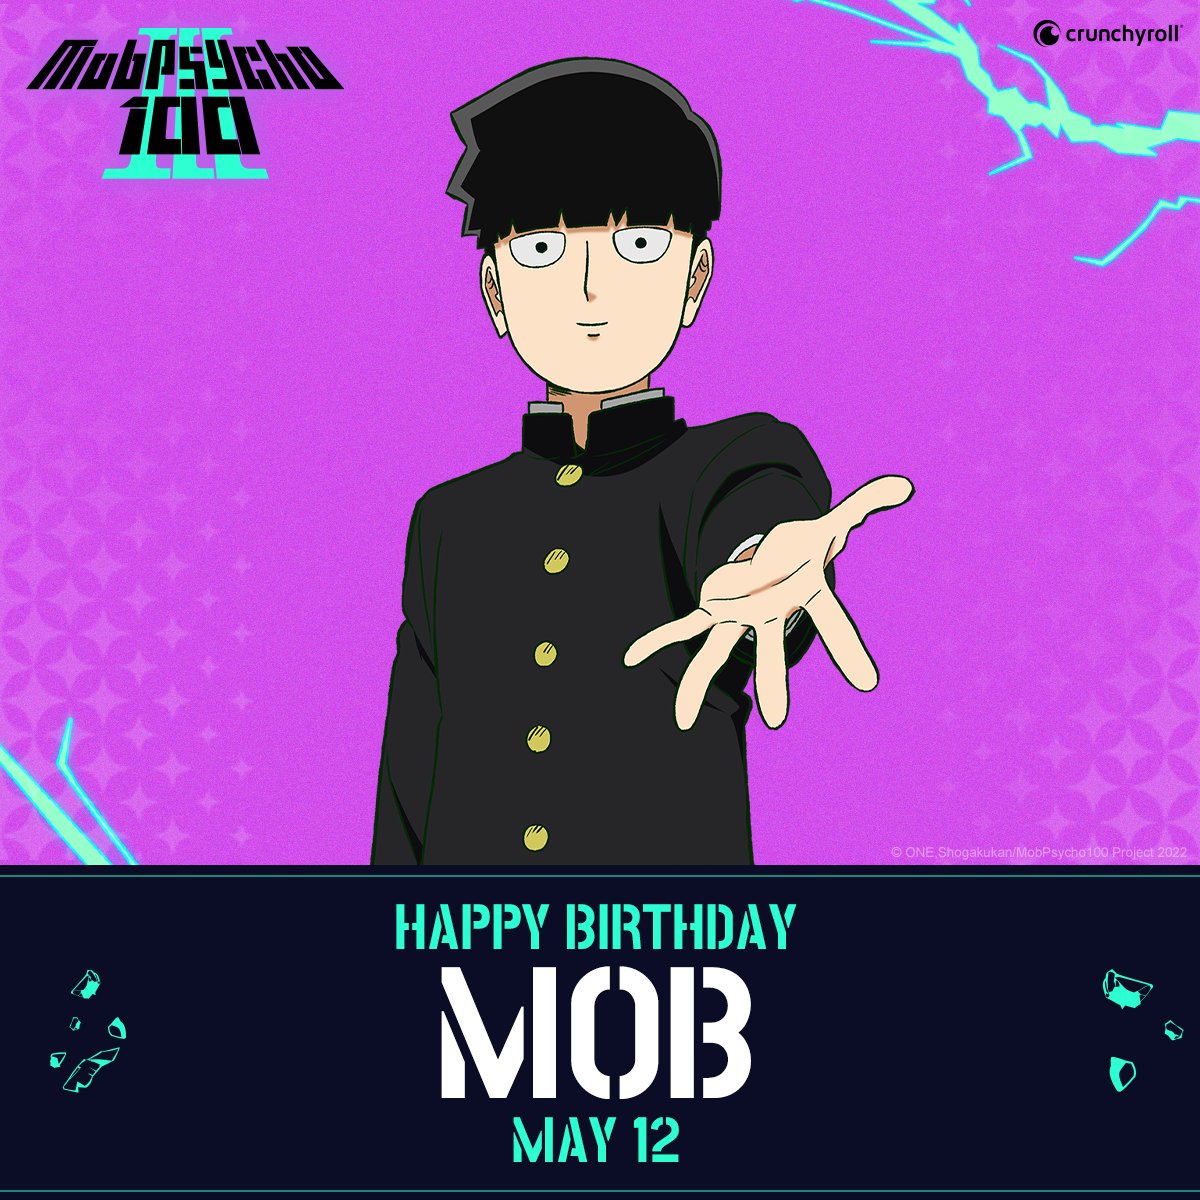 Happy birthday, Mob! (via @MobPsychoOne)